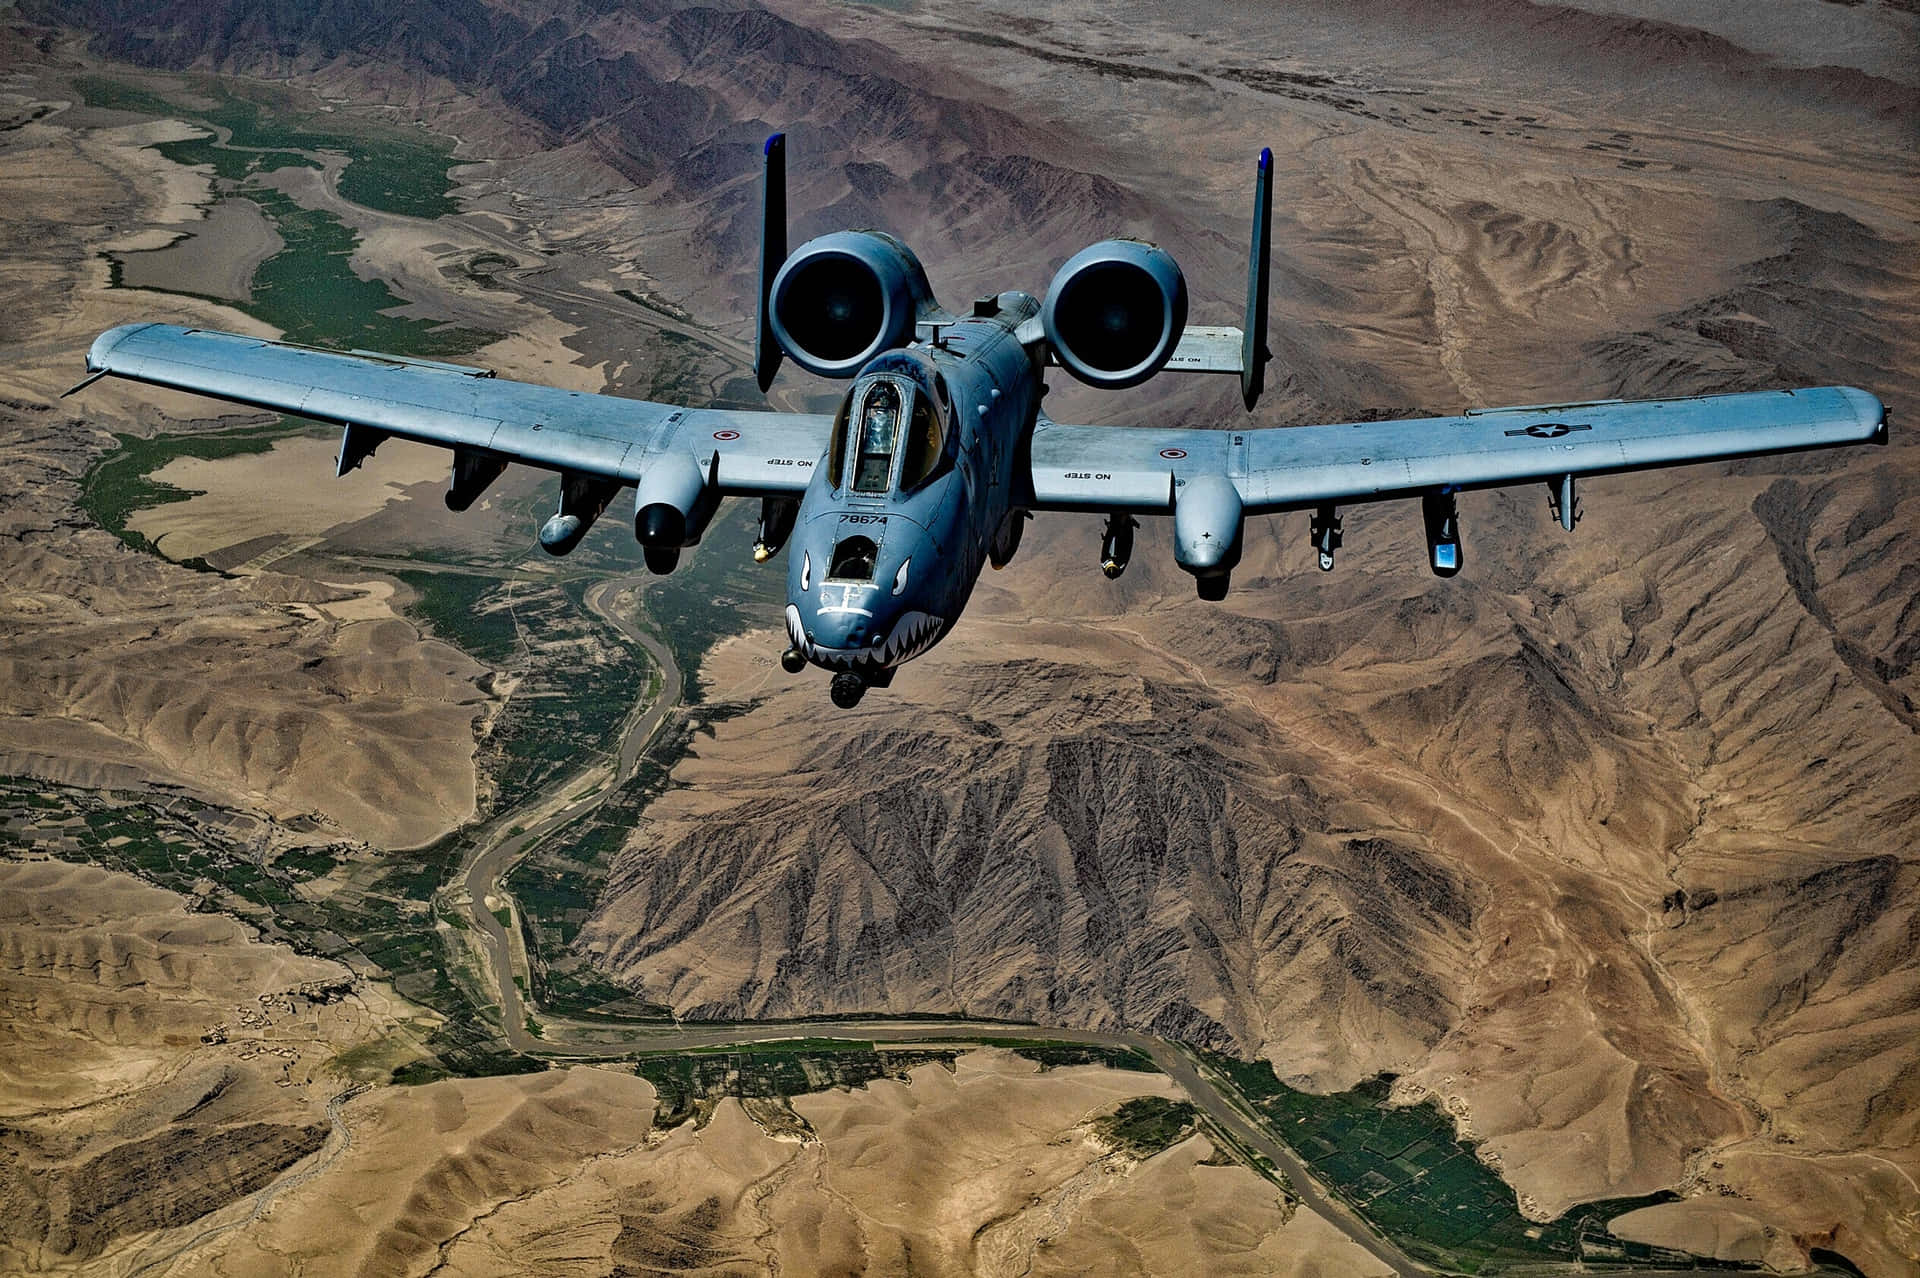 Eineu.s. Air Force A-10 Hawkeye. Wallpaper